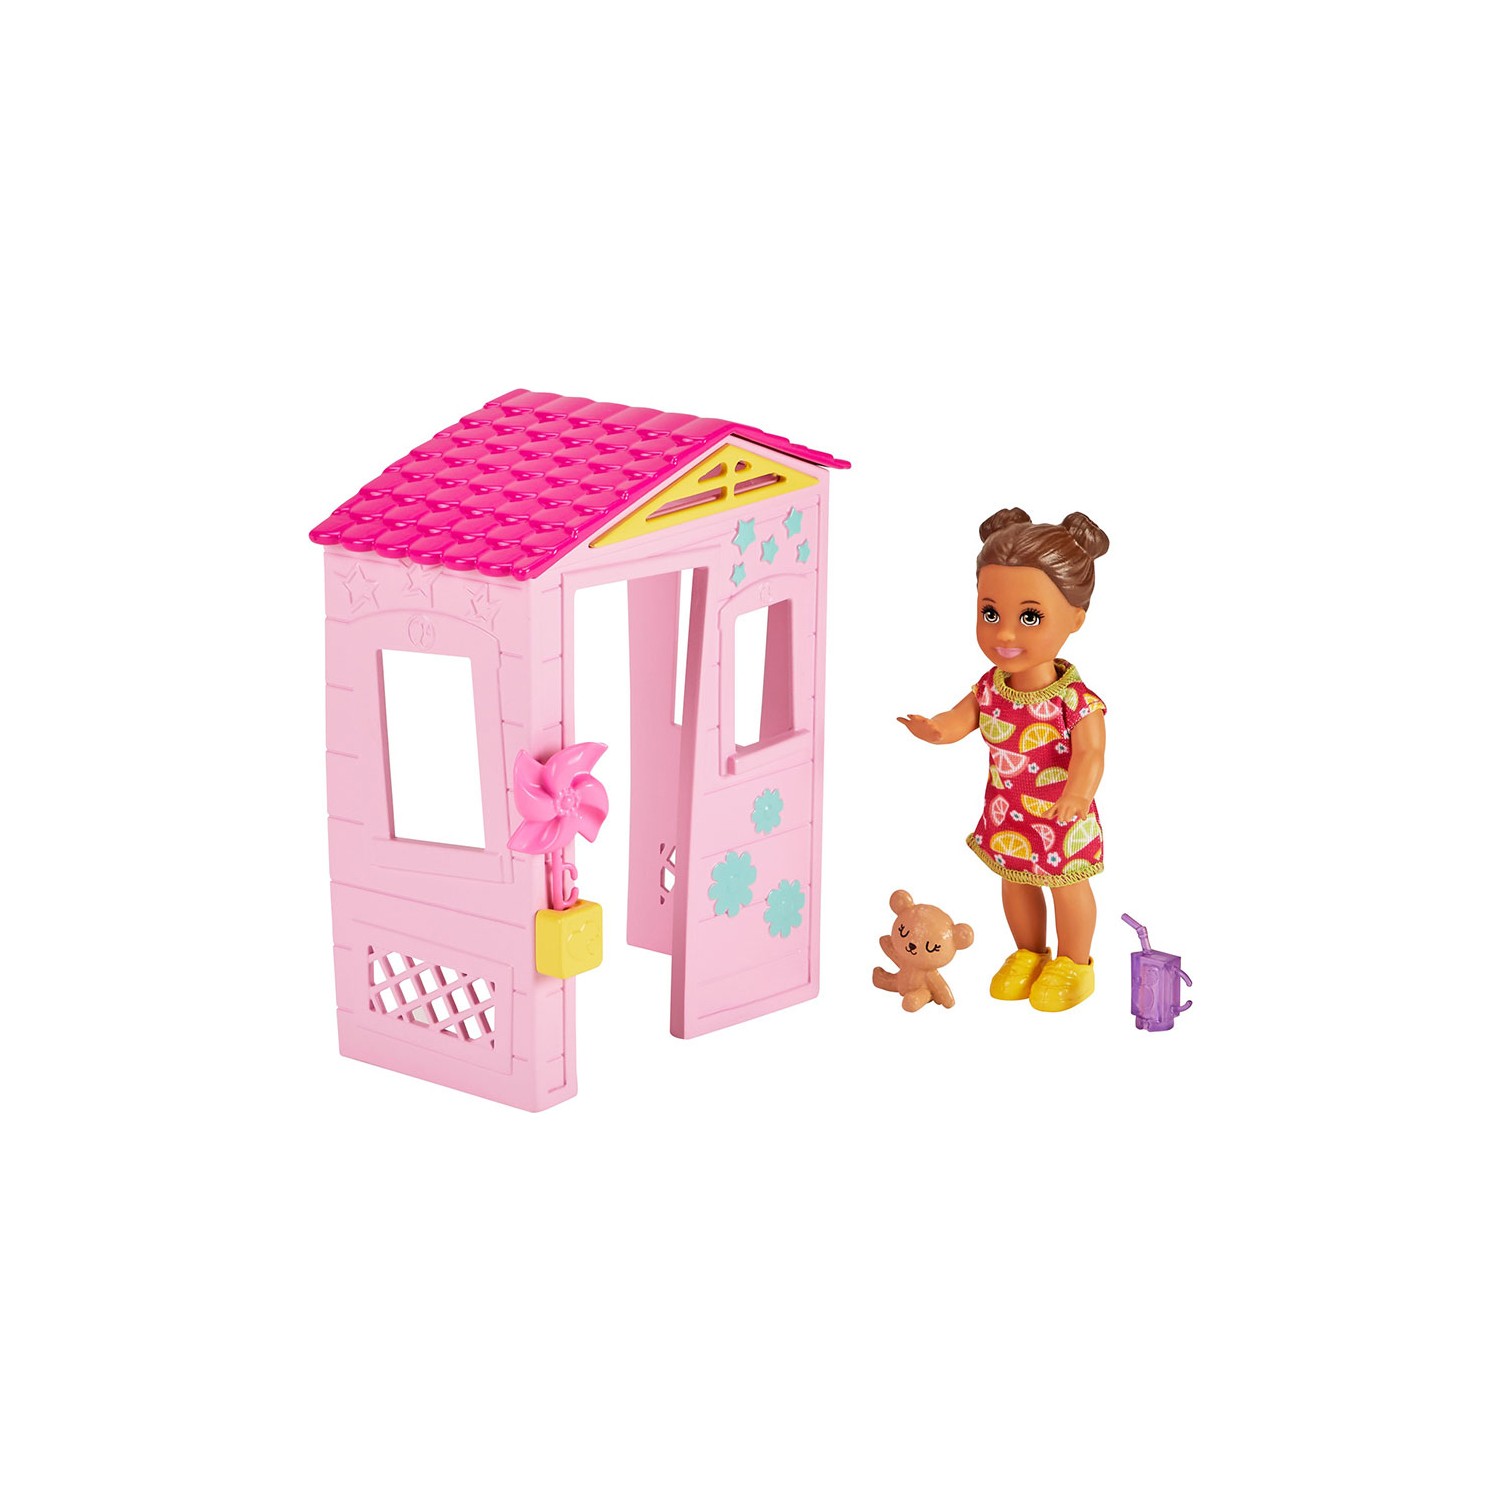 цена Игровой набор Barbie Skipper Babysitters